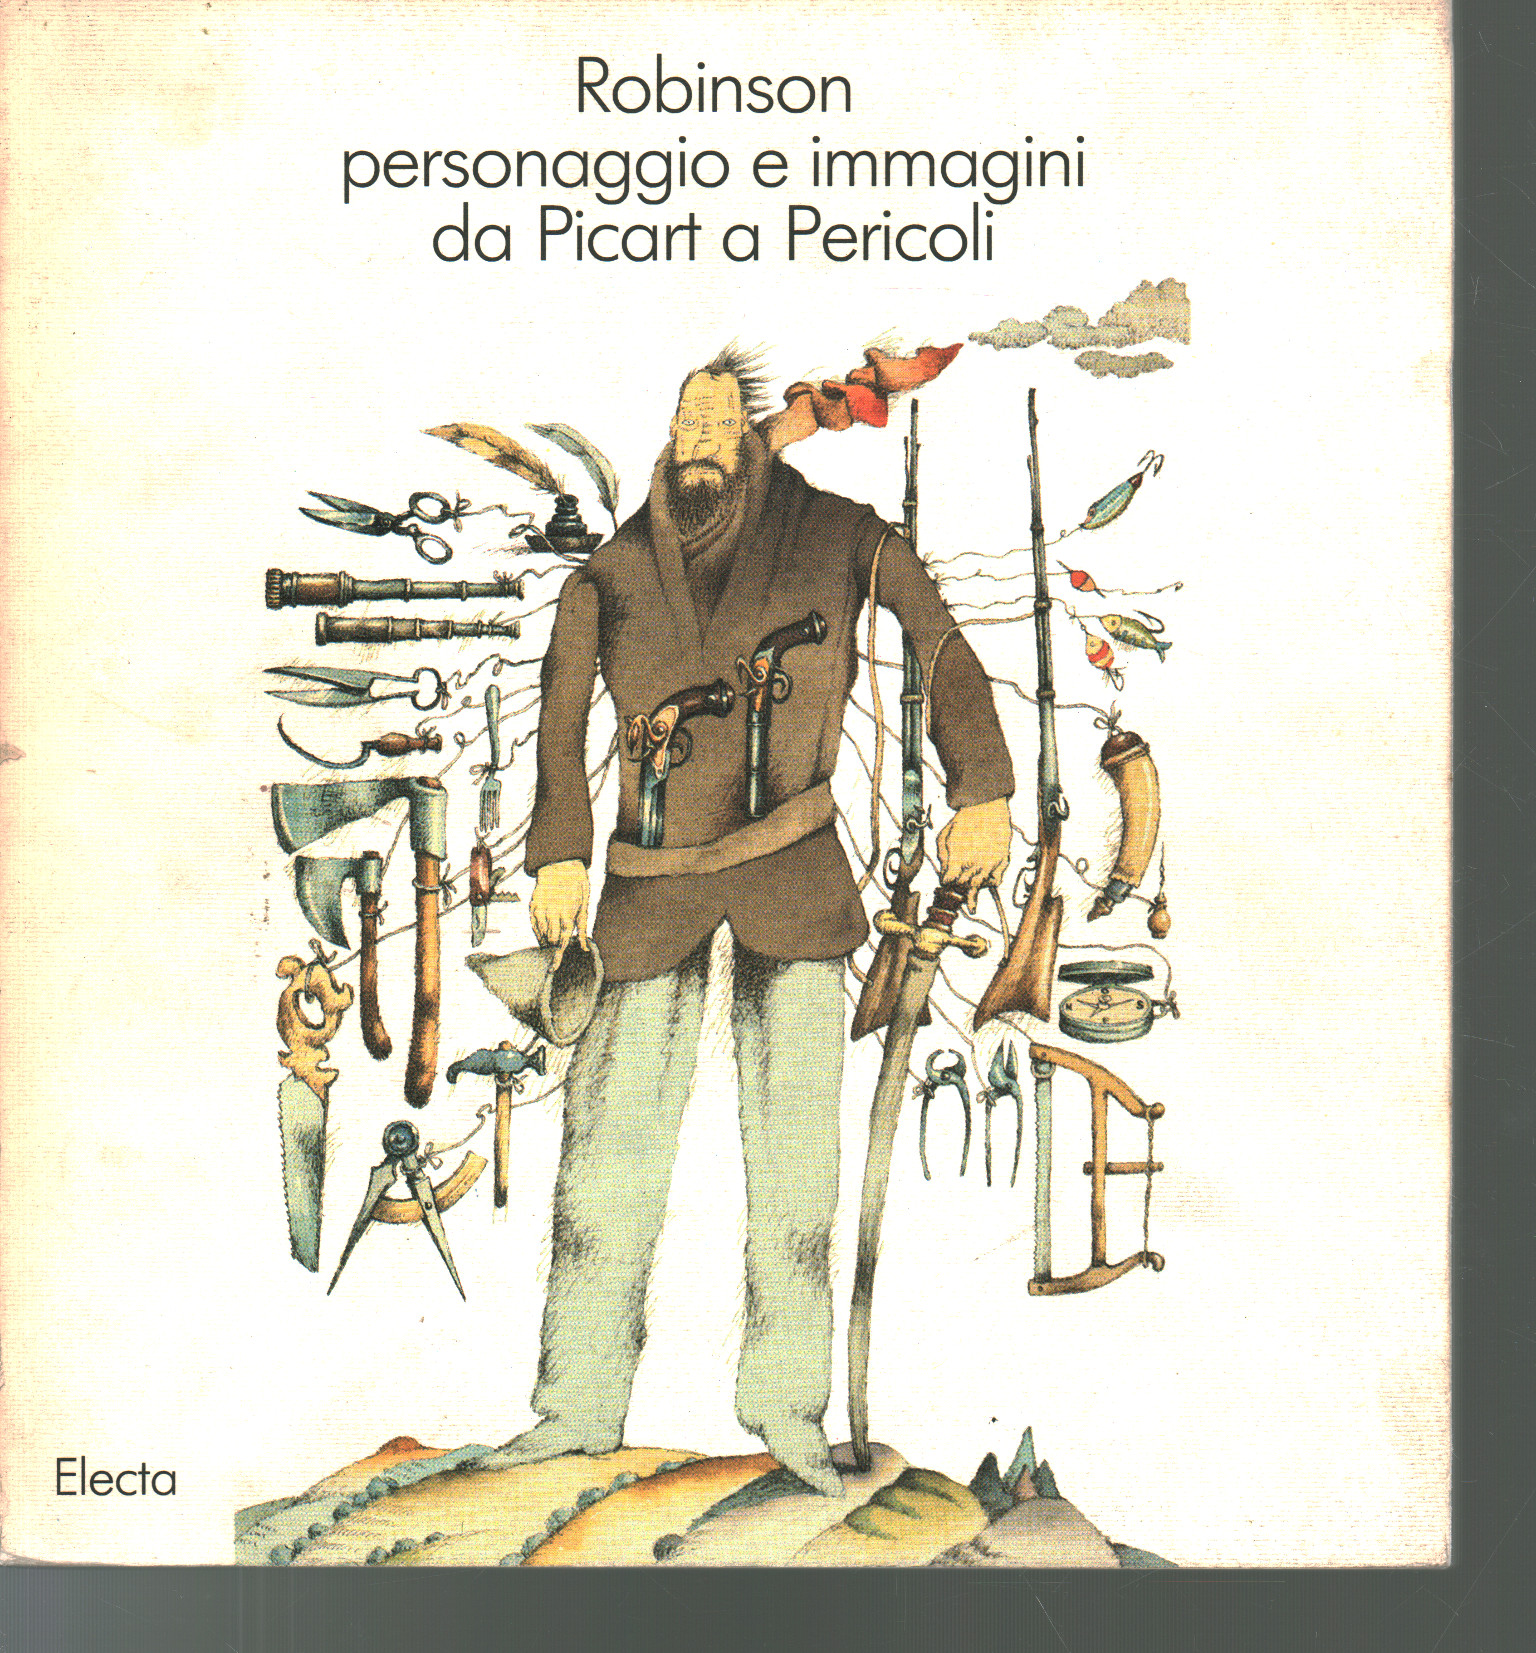 Robinson y el carácter de la imagen de Picart a Perico, Paolo Temeroli